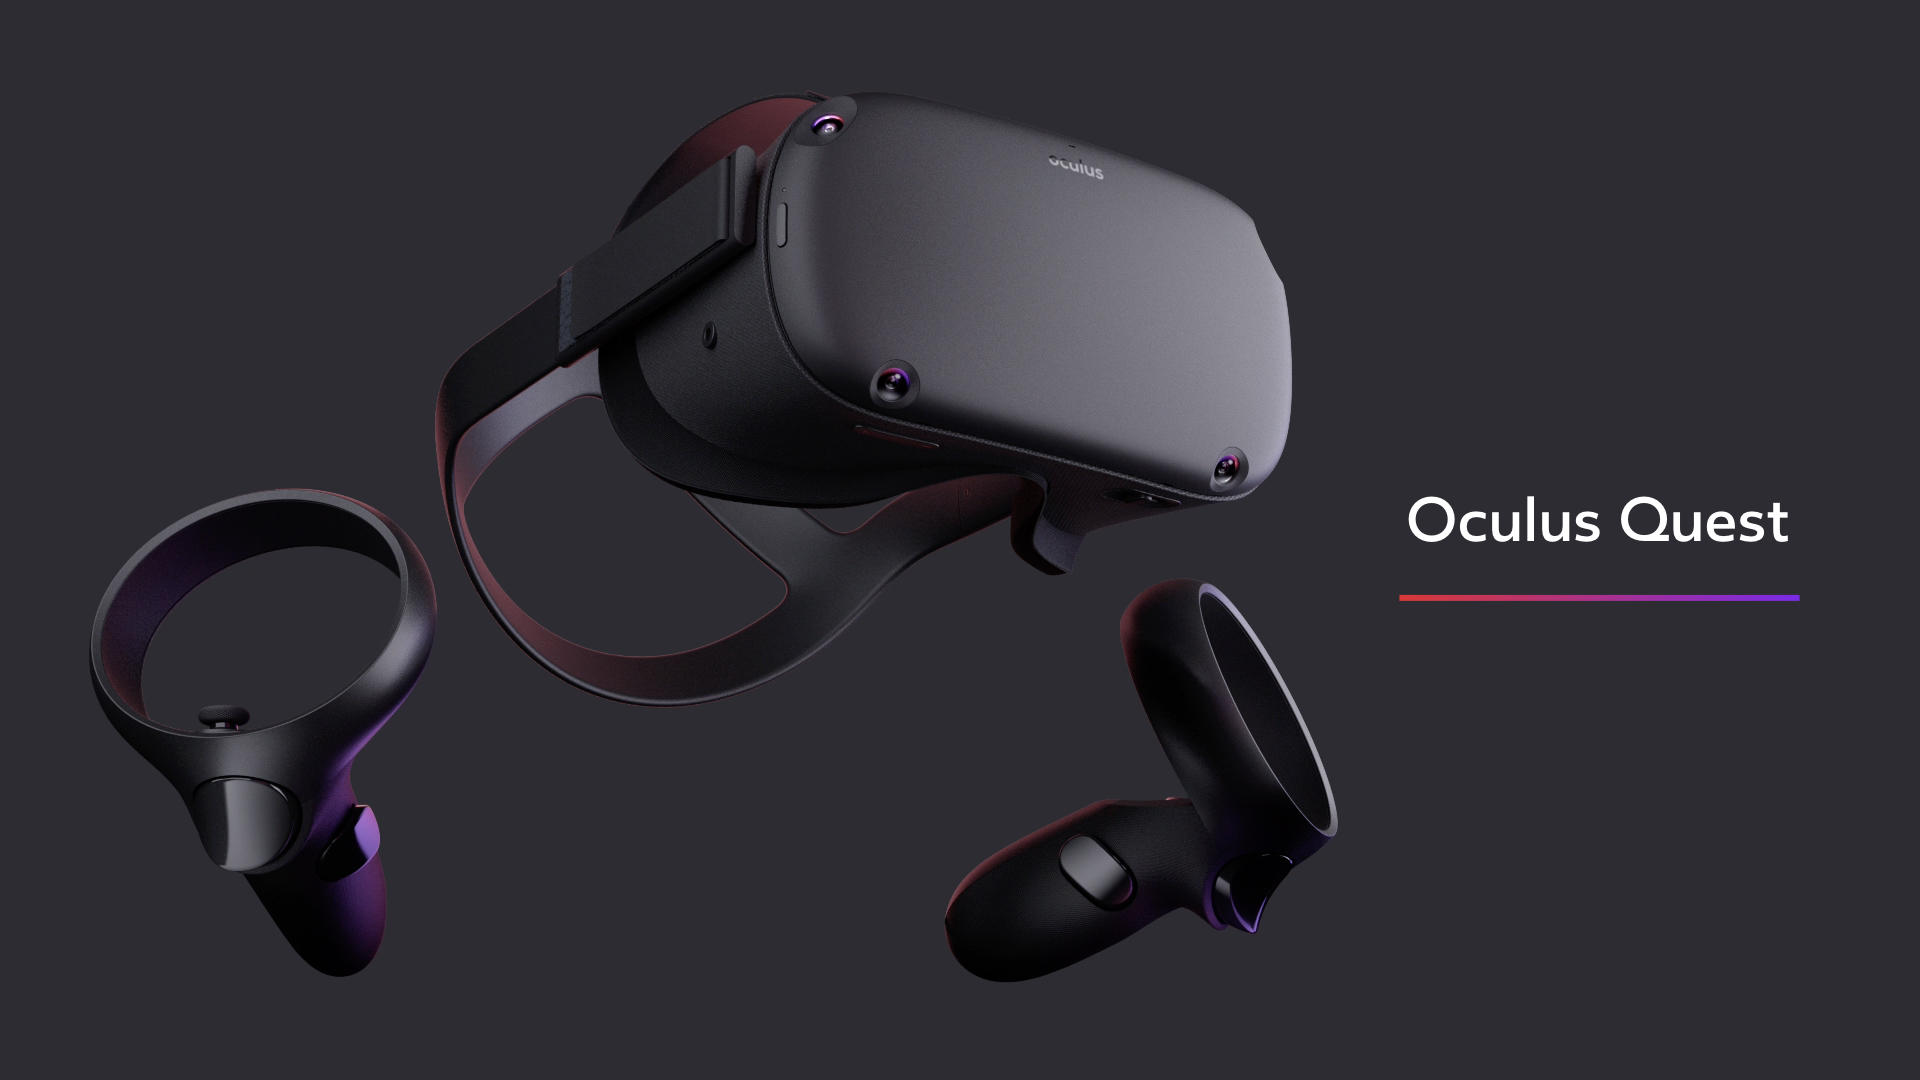 Oculus Vr New Sale, 57% OFF | www.santramonsagratcor.cat